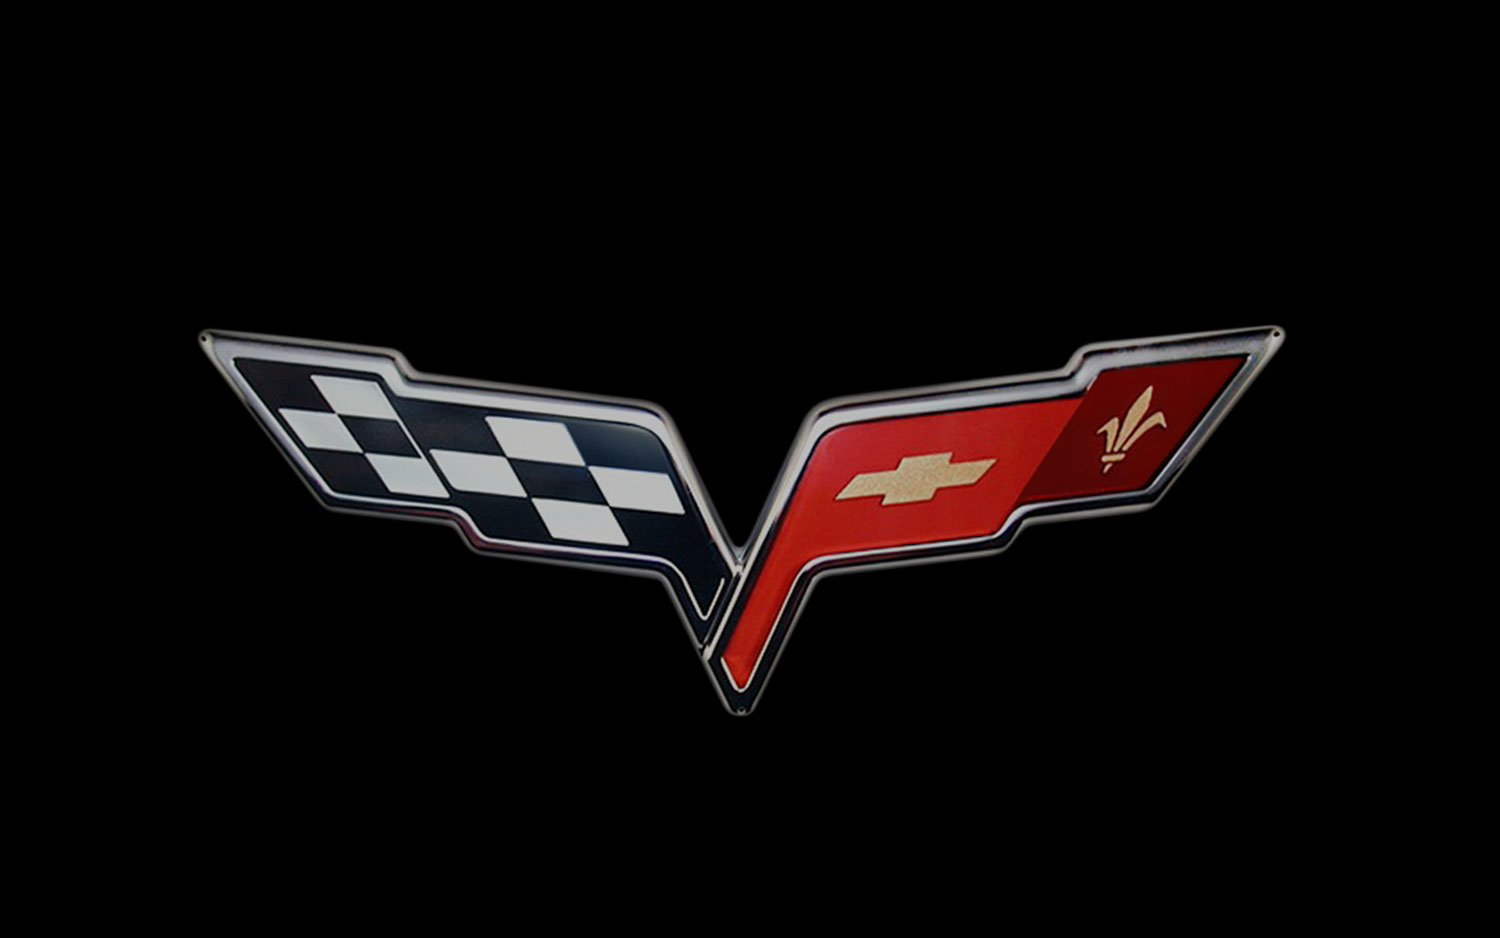 2005-Chevrolet-Corvette-Crossed-Flags-logo